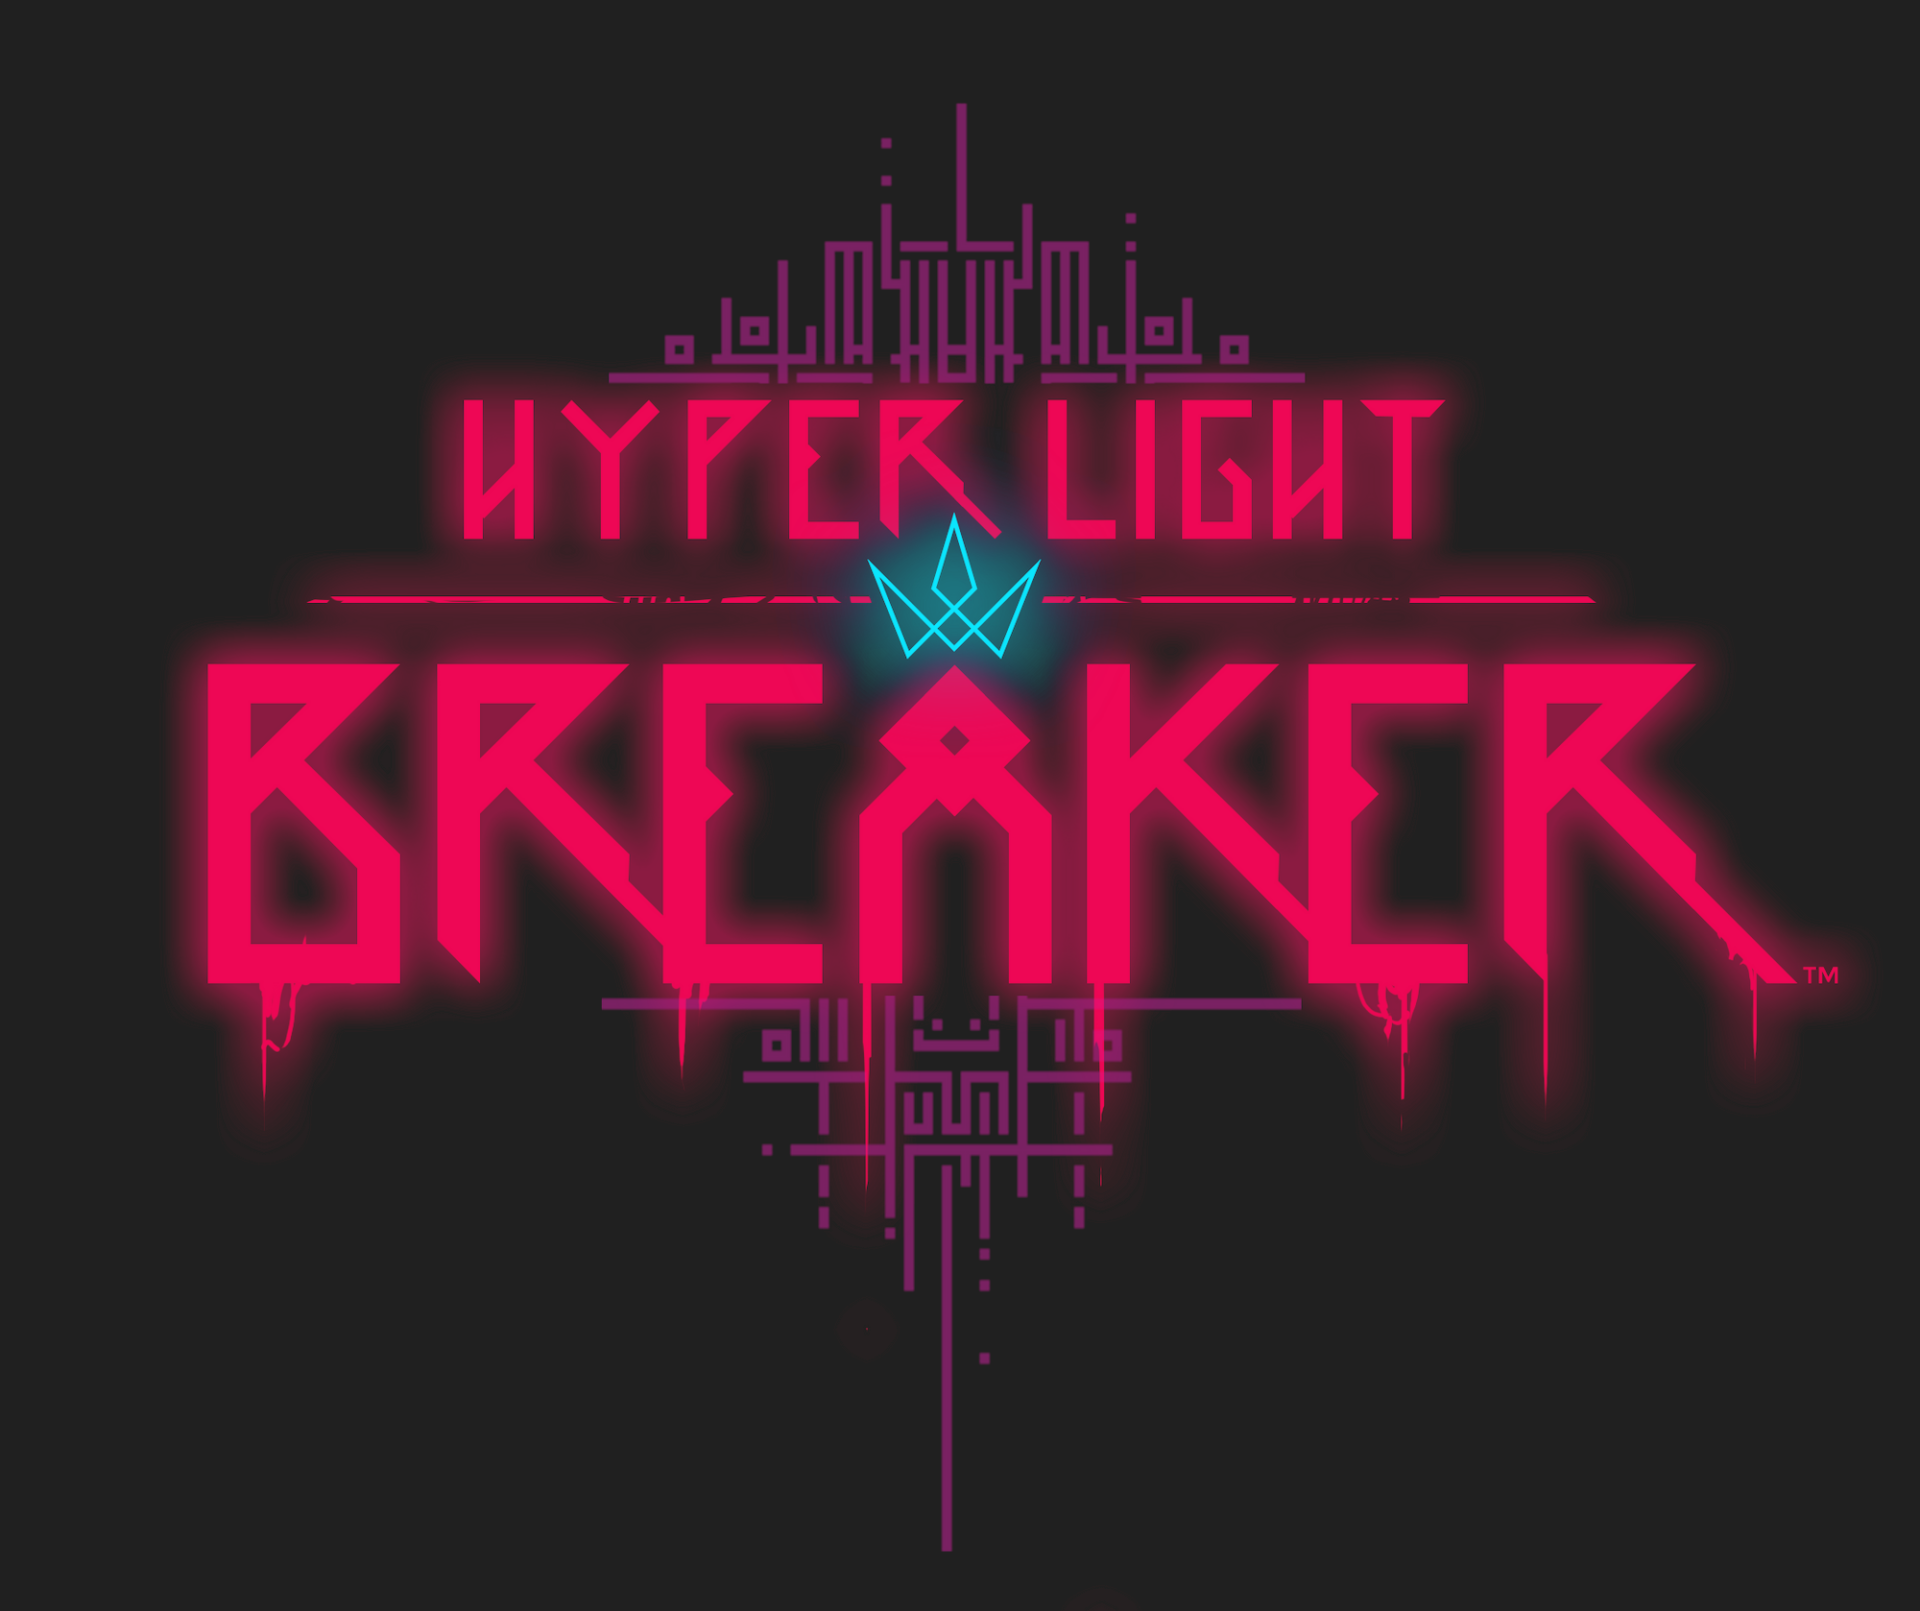 hyper light breaker early access